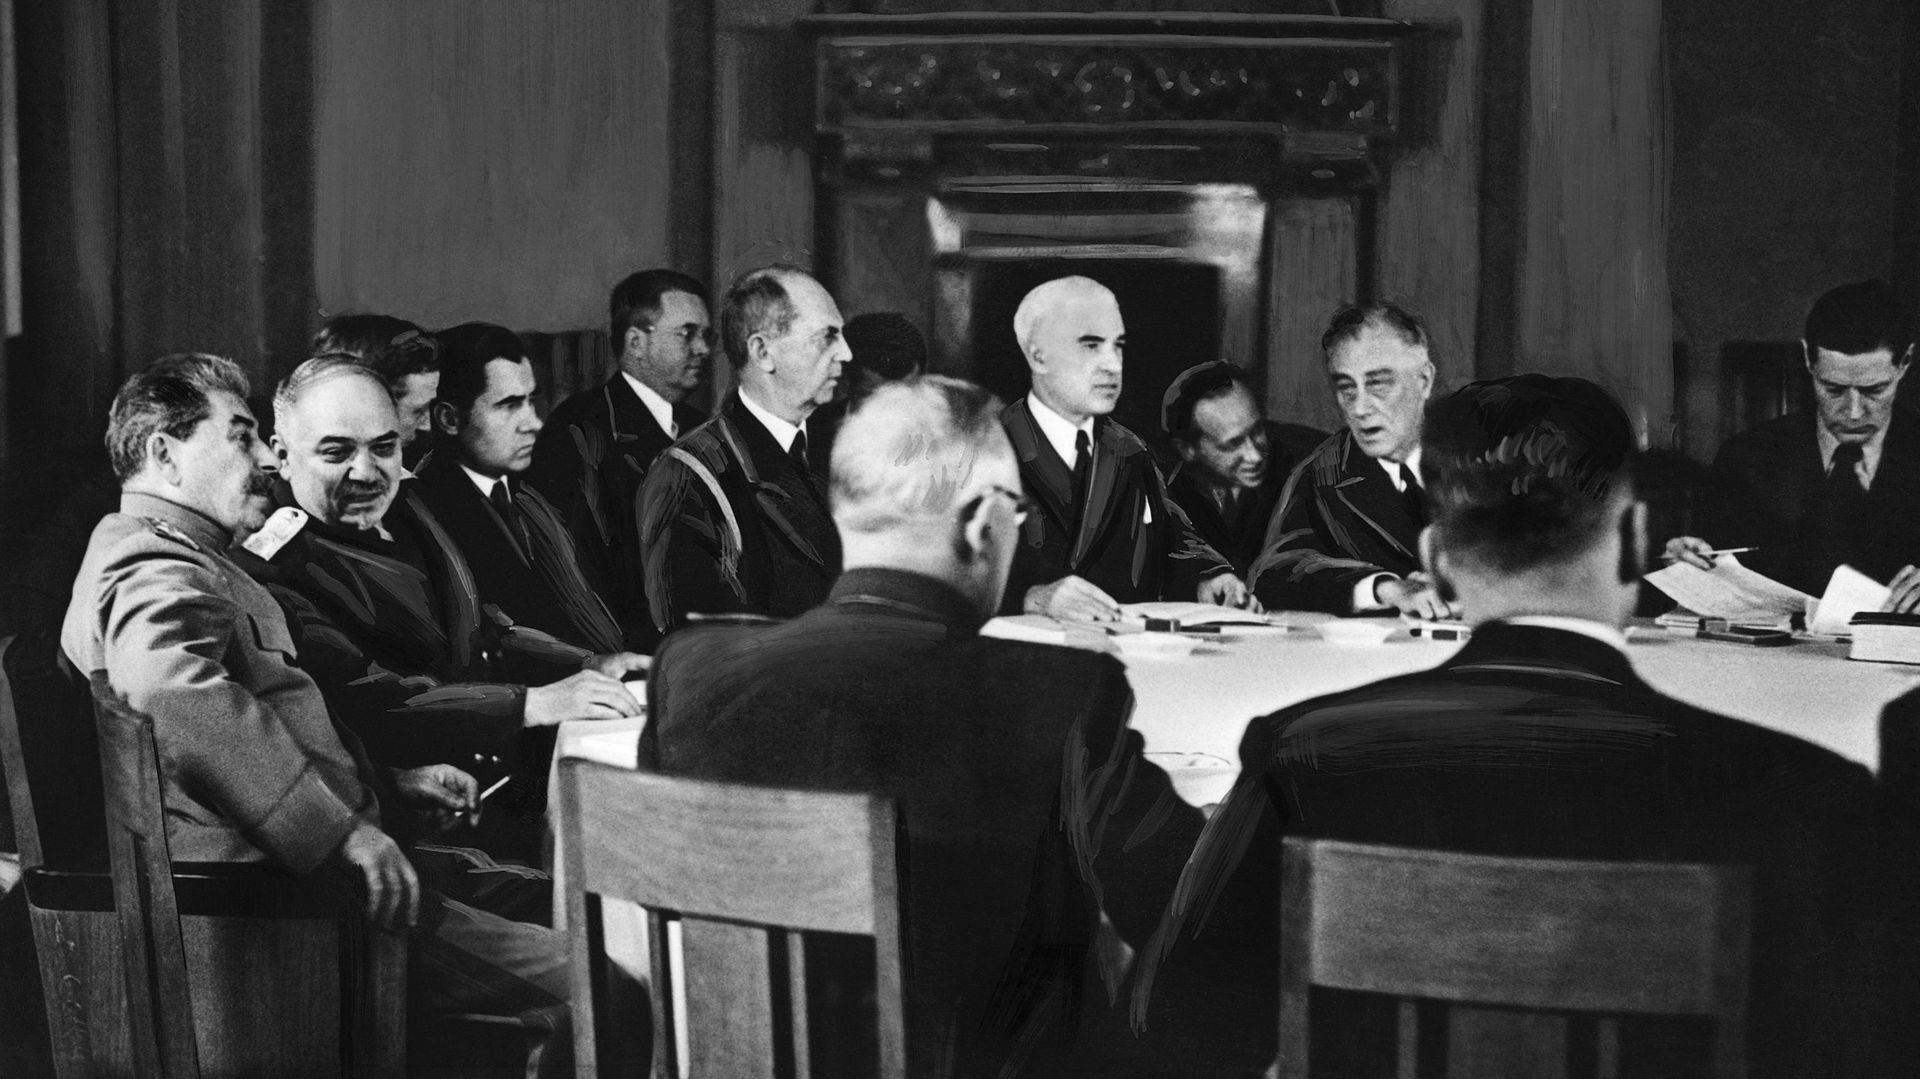 C'est dans le salon blanc que les chefs d'états et leur administration négocient. Staline est à gauche de l'image, Churchill au centre.